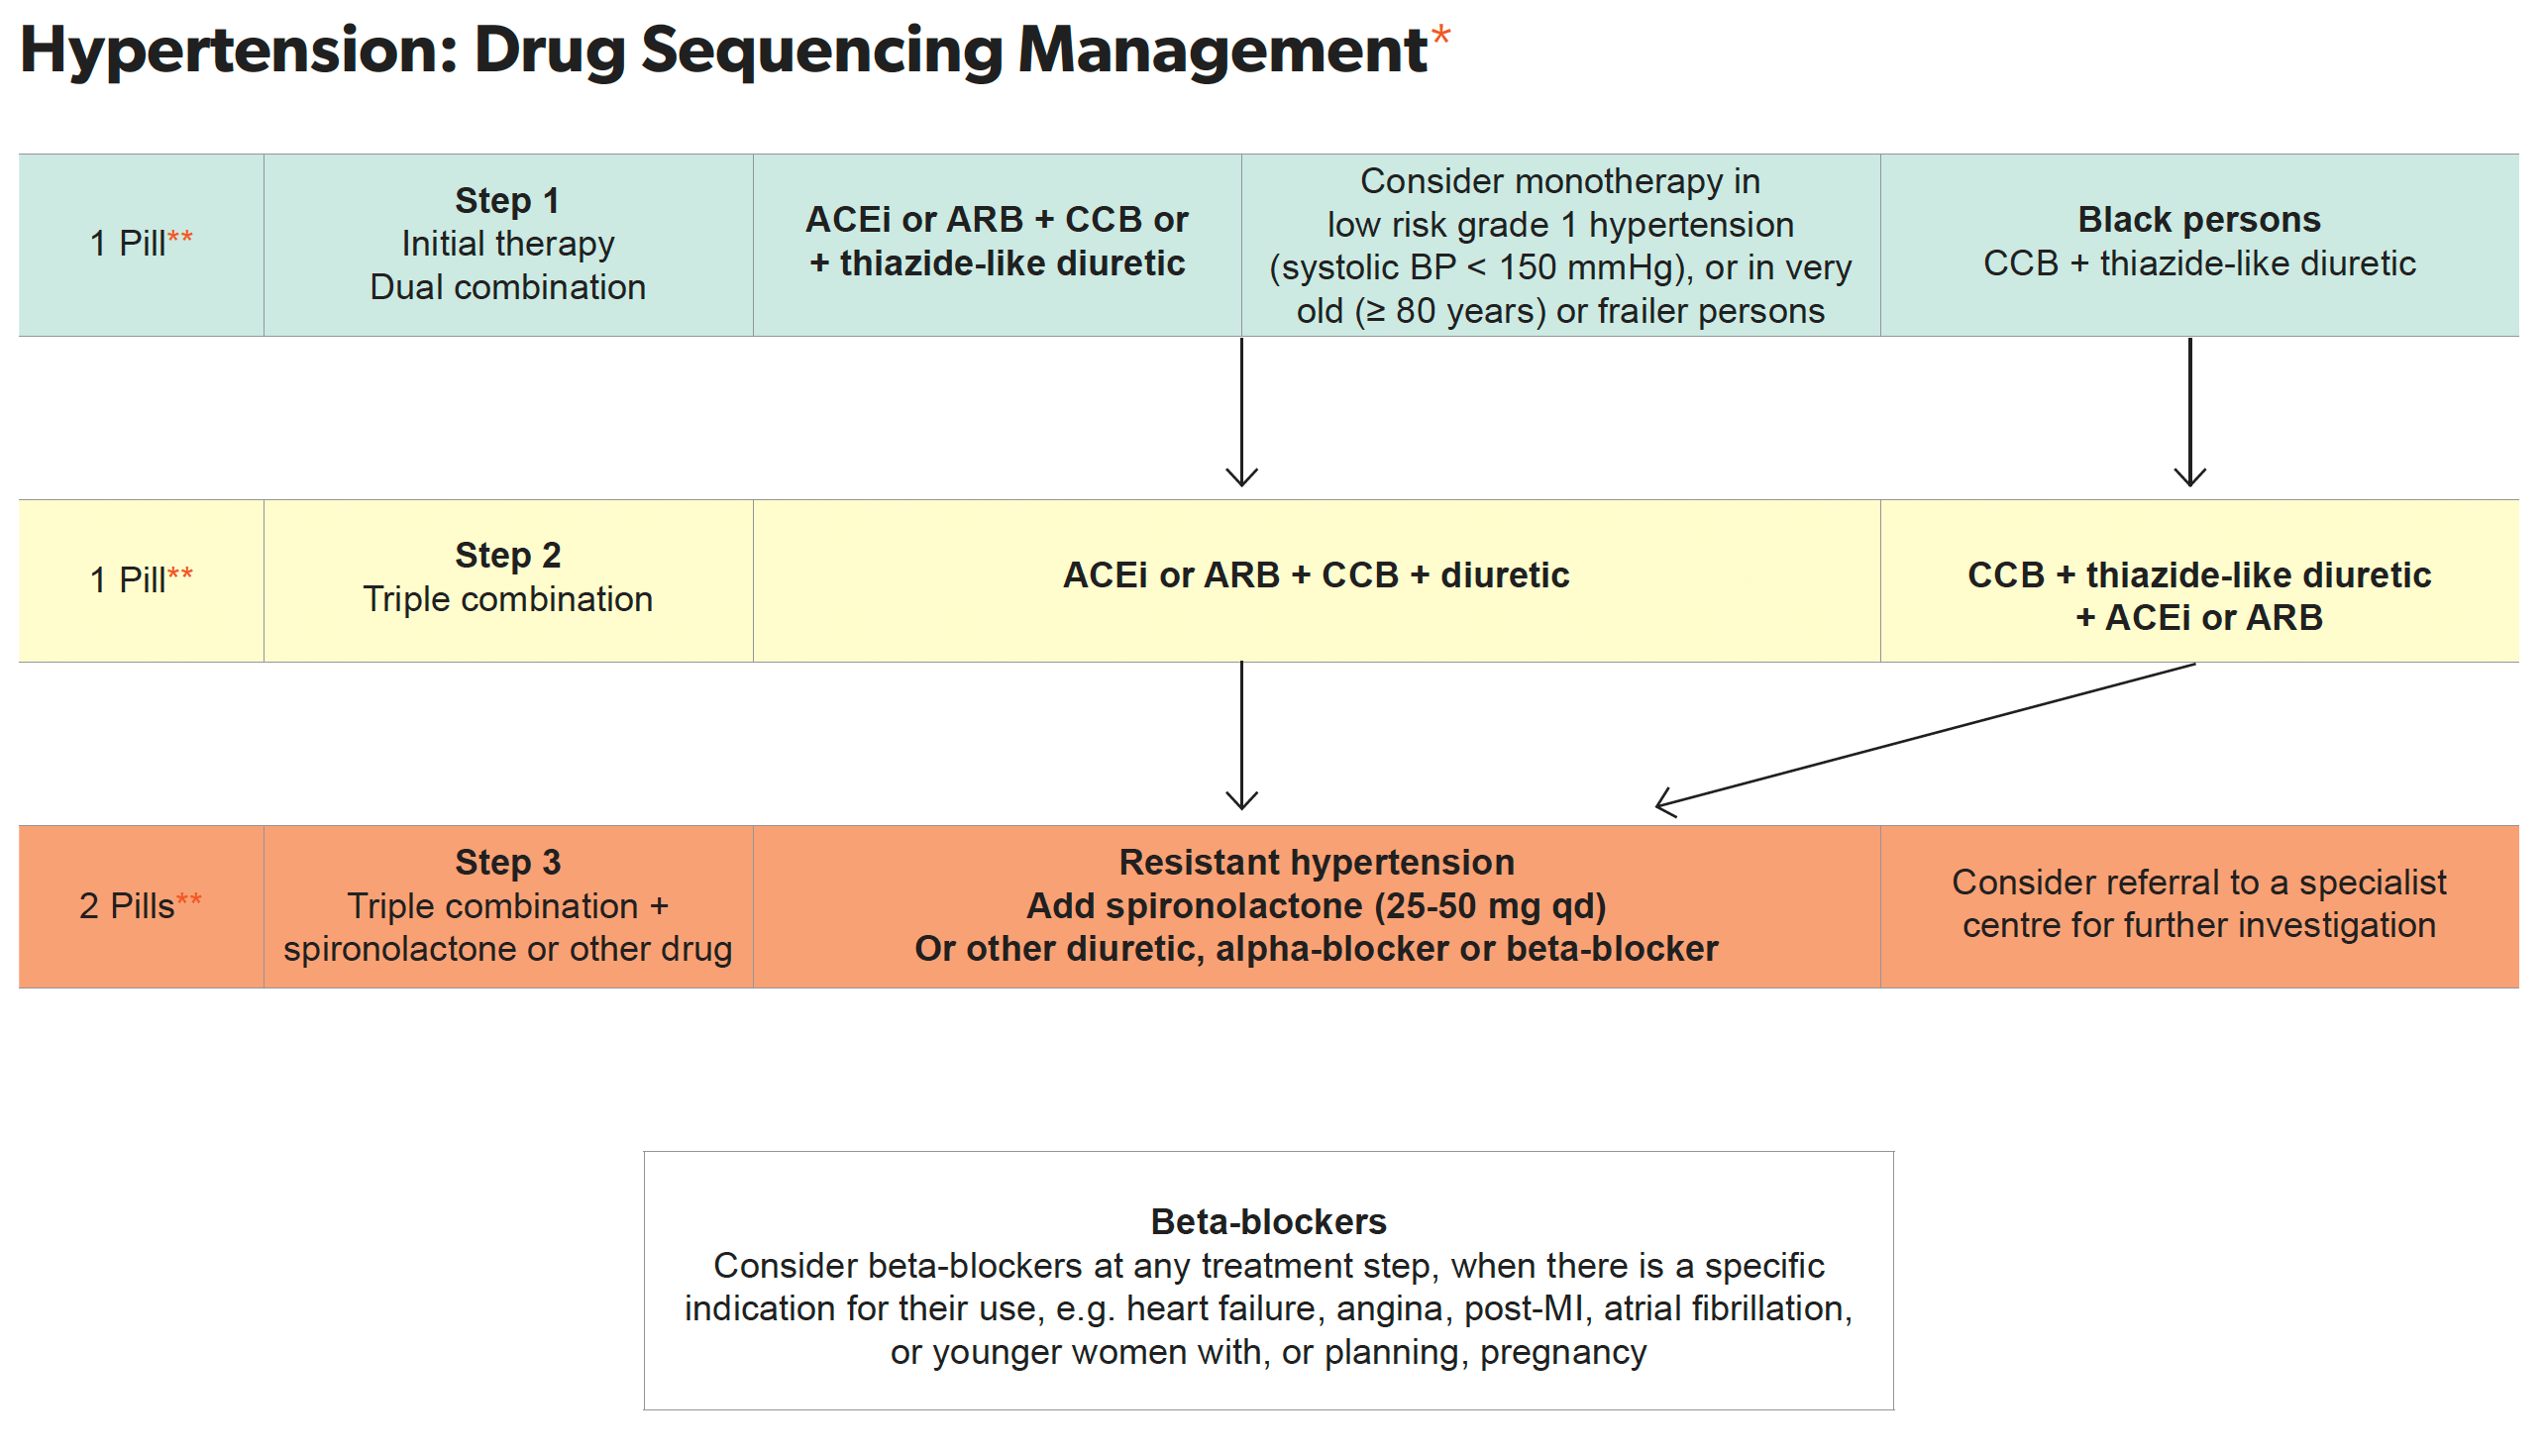 Hypertension: Drug Sequencing Management Algorith Image 2023 EACS v12.0